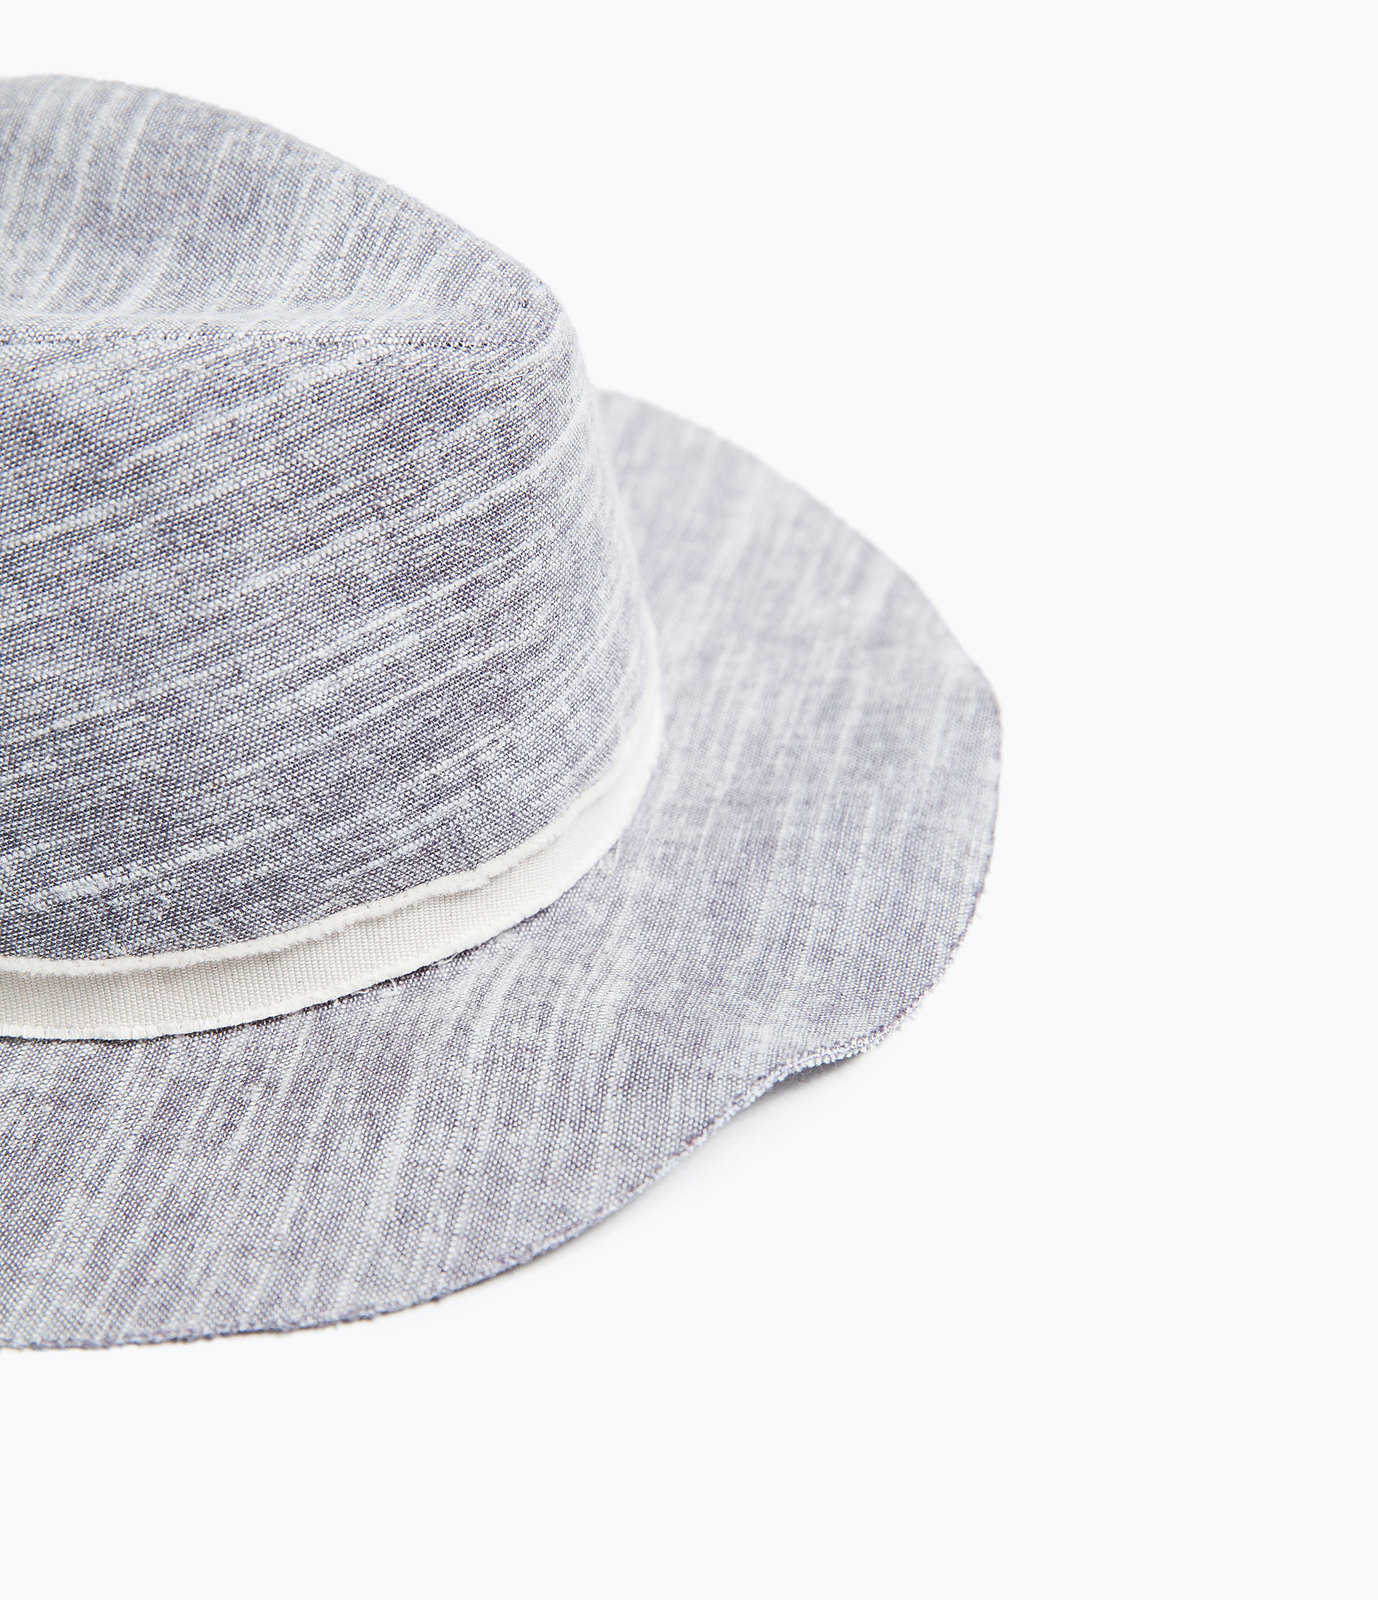 Zara természetes szőtt kalap 2015.03.02 fotója